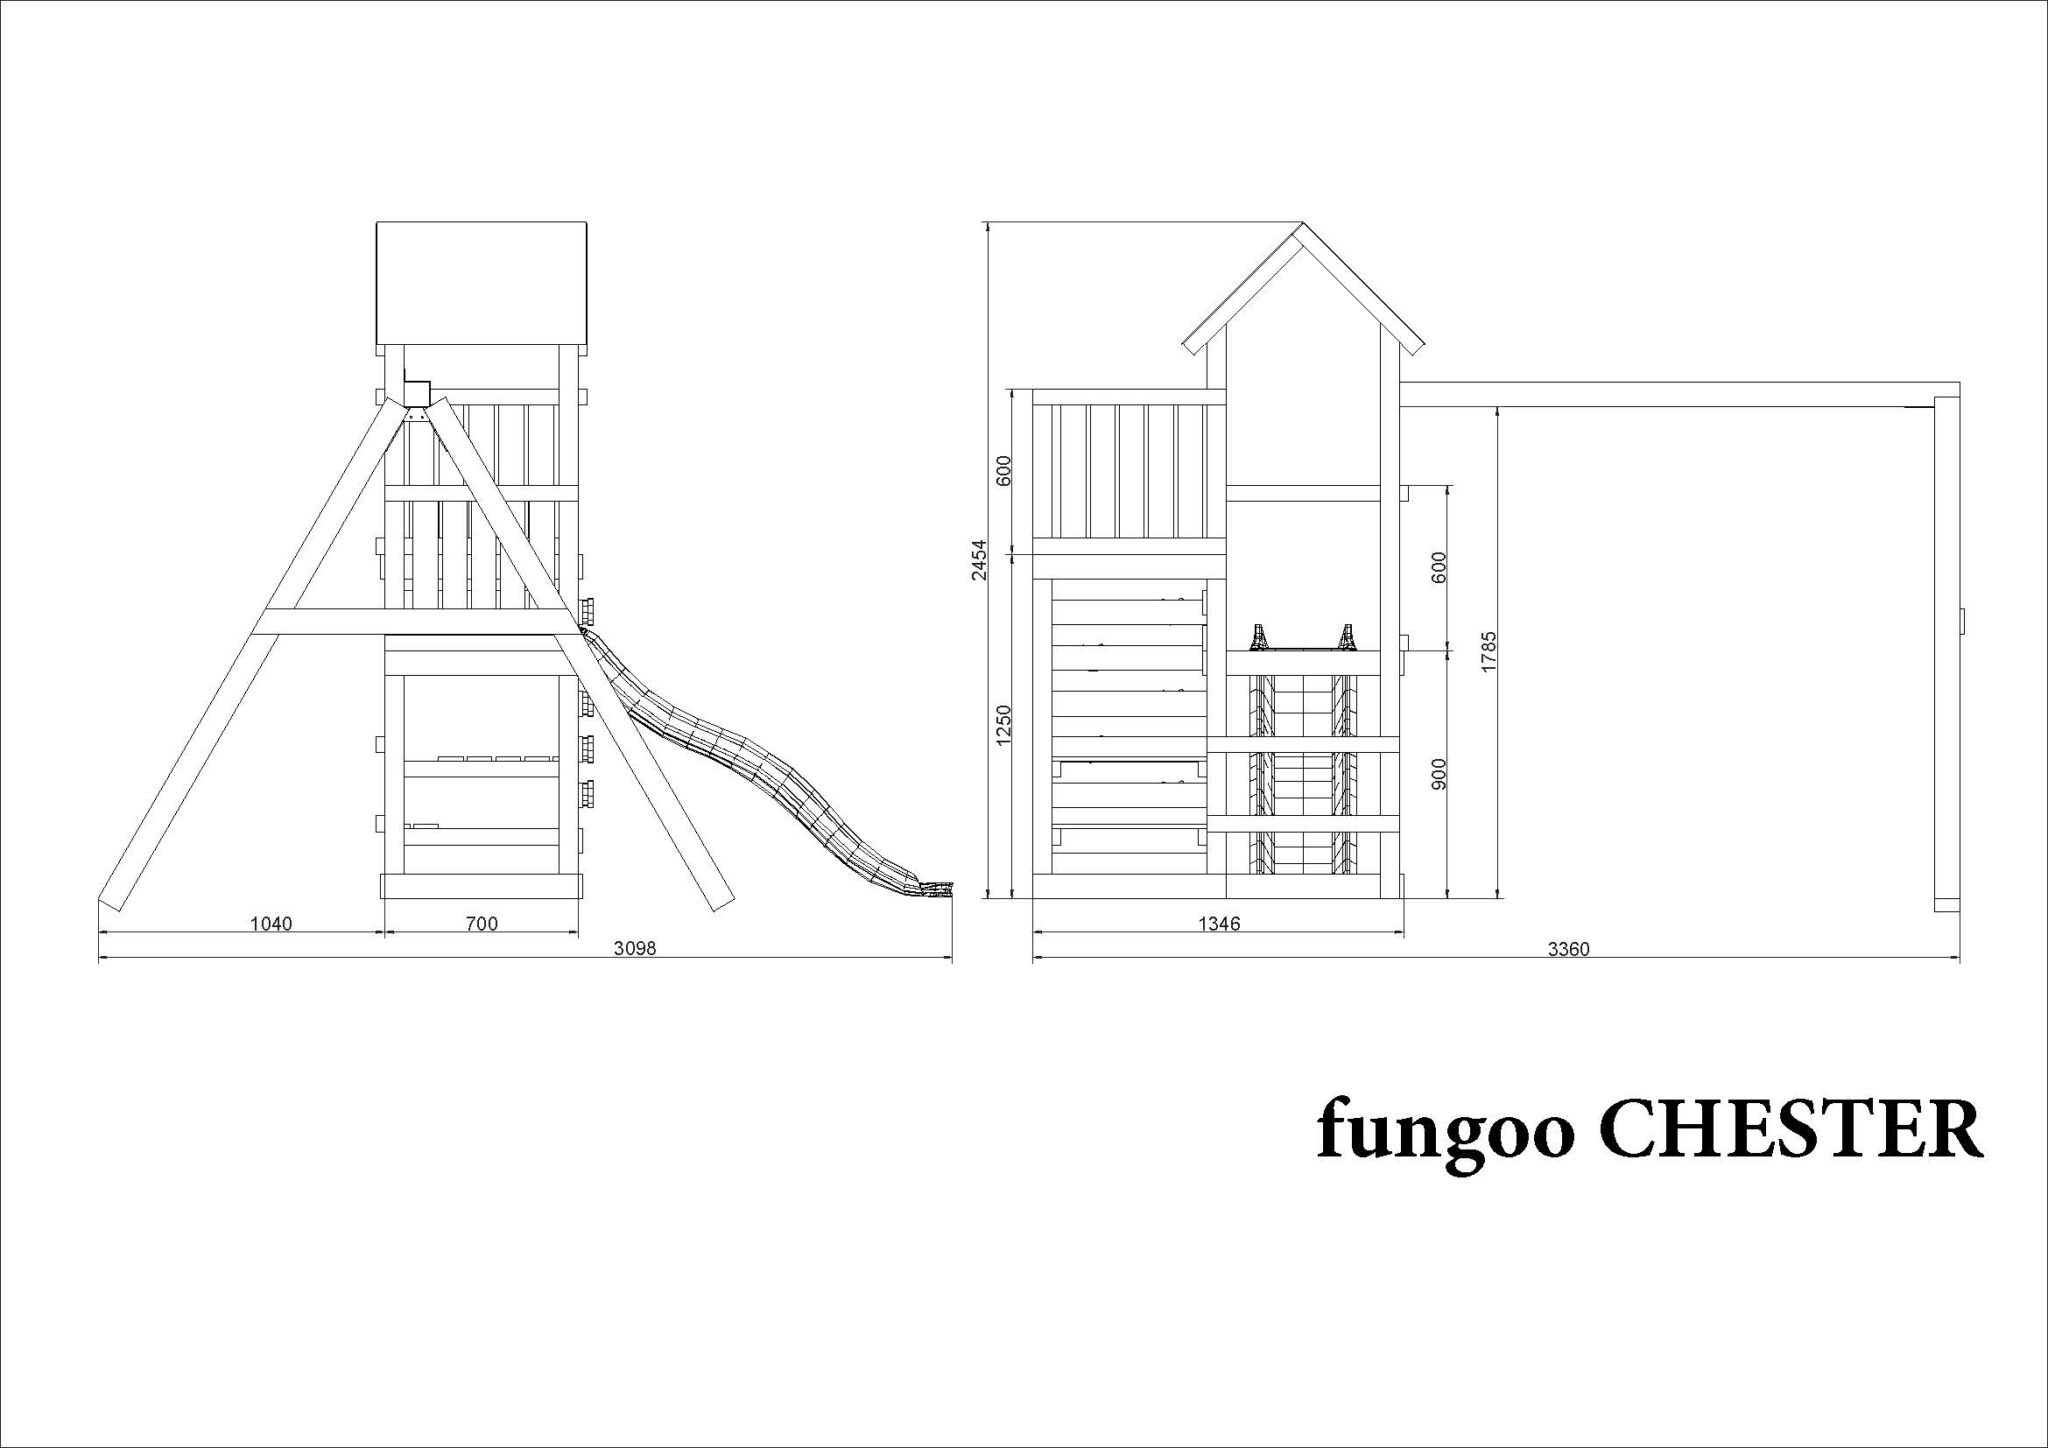 Fungoo Chester Mini Spielplatz mit Doppelschaukel, Rutsche, Kletterwand